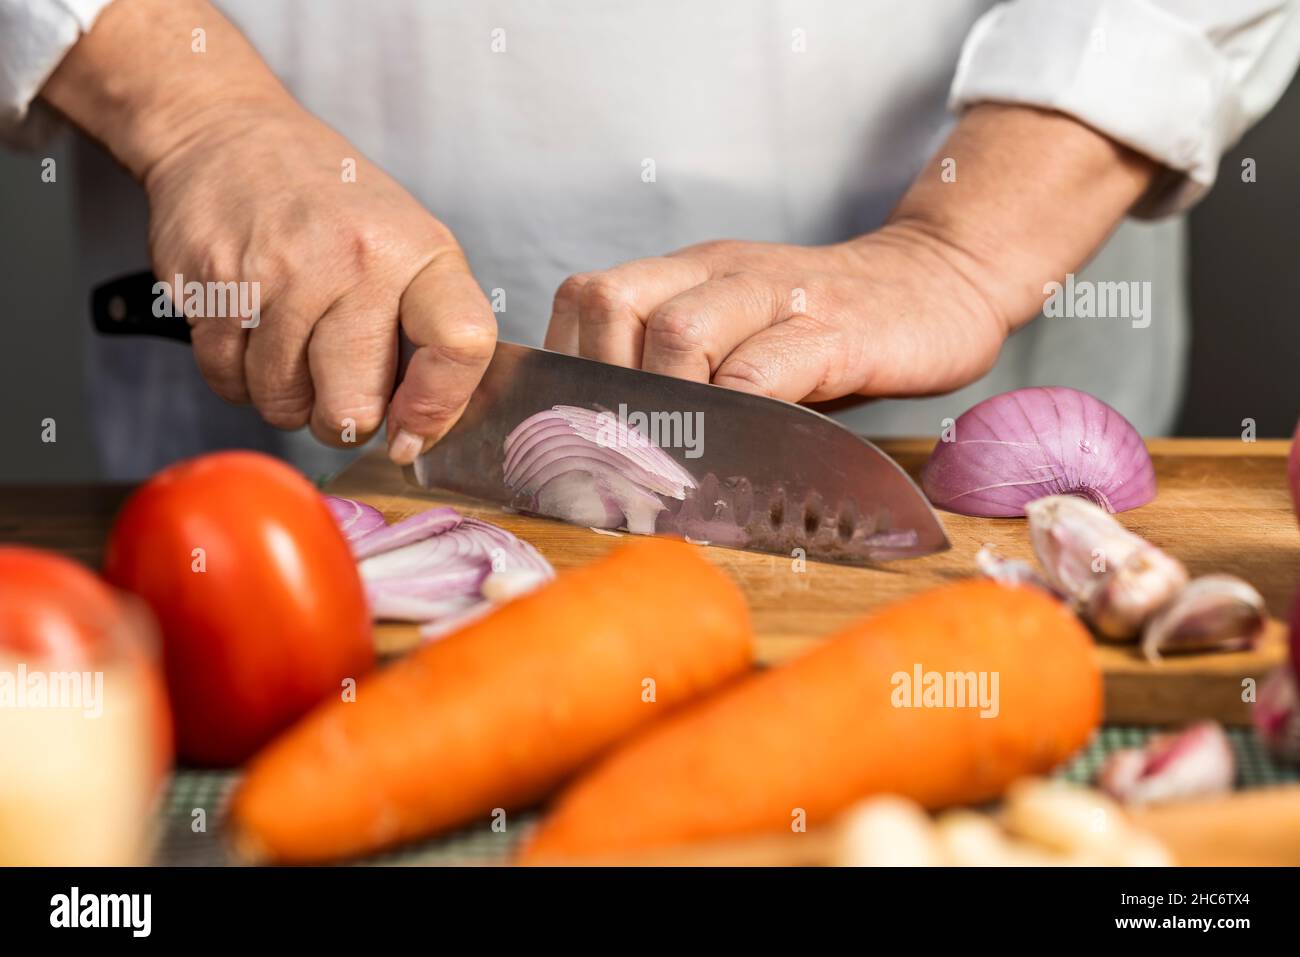 Vue rapprochée des mains d'une femme adulte coupant un oignon avec un couteau de cuisine sur une planche en bois pour la préparation de lasagnes. Banque D'Images